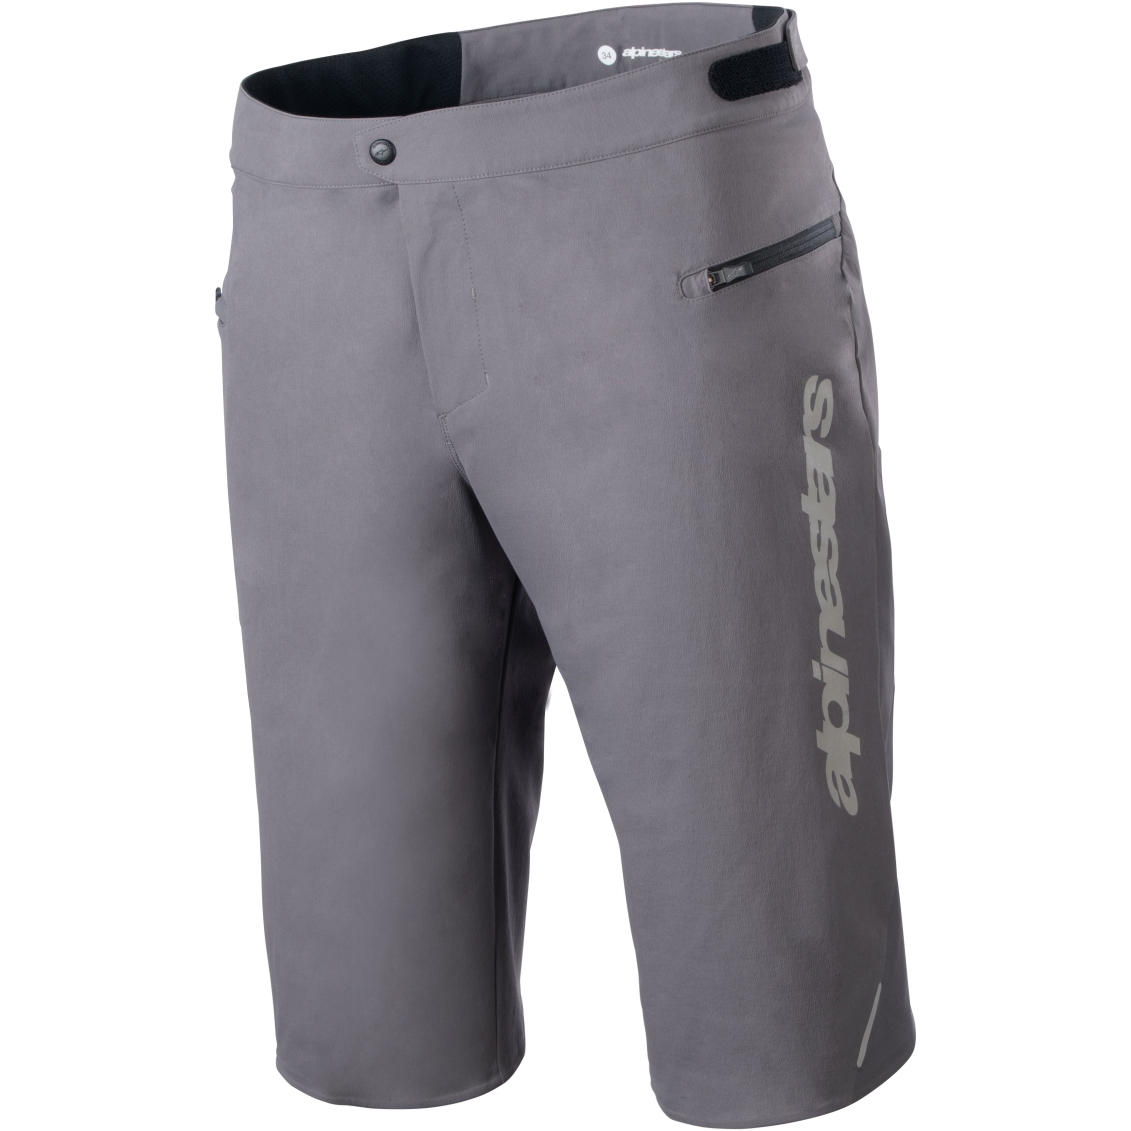 Produktbild von Alpinestars A-Dura Elite Shorts Herren - dark gray